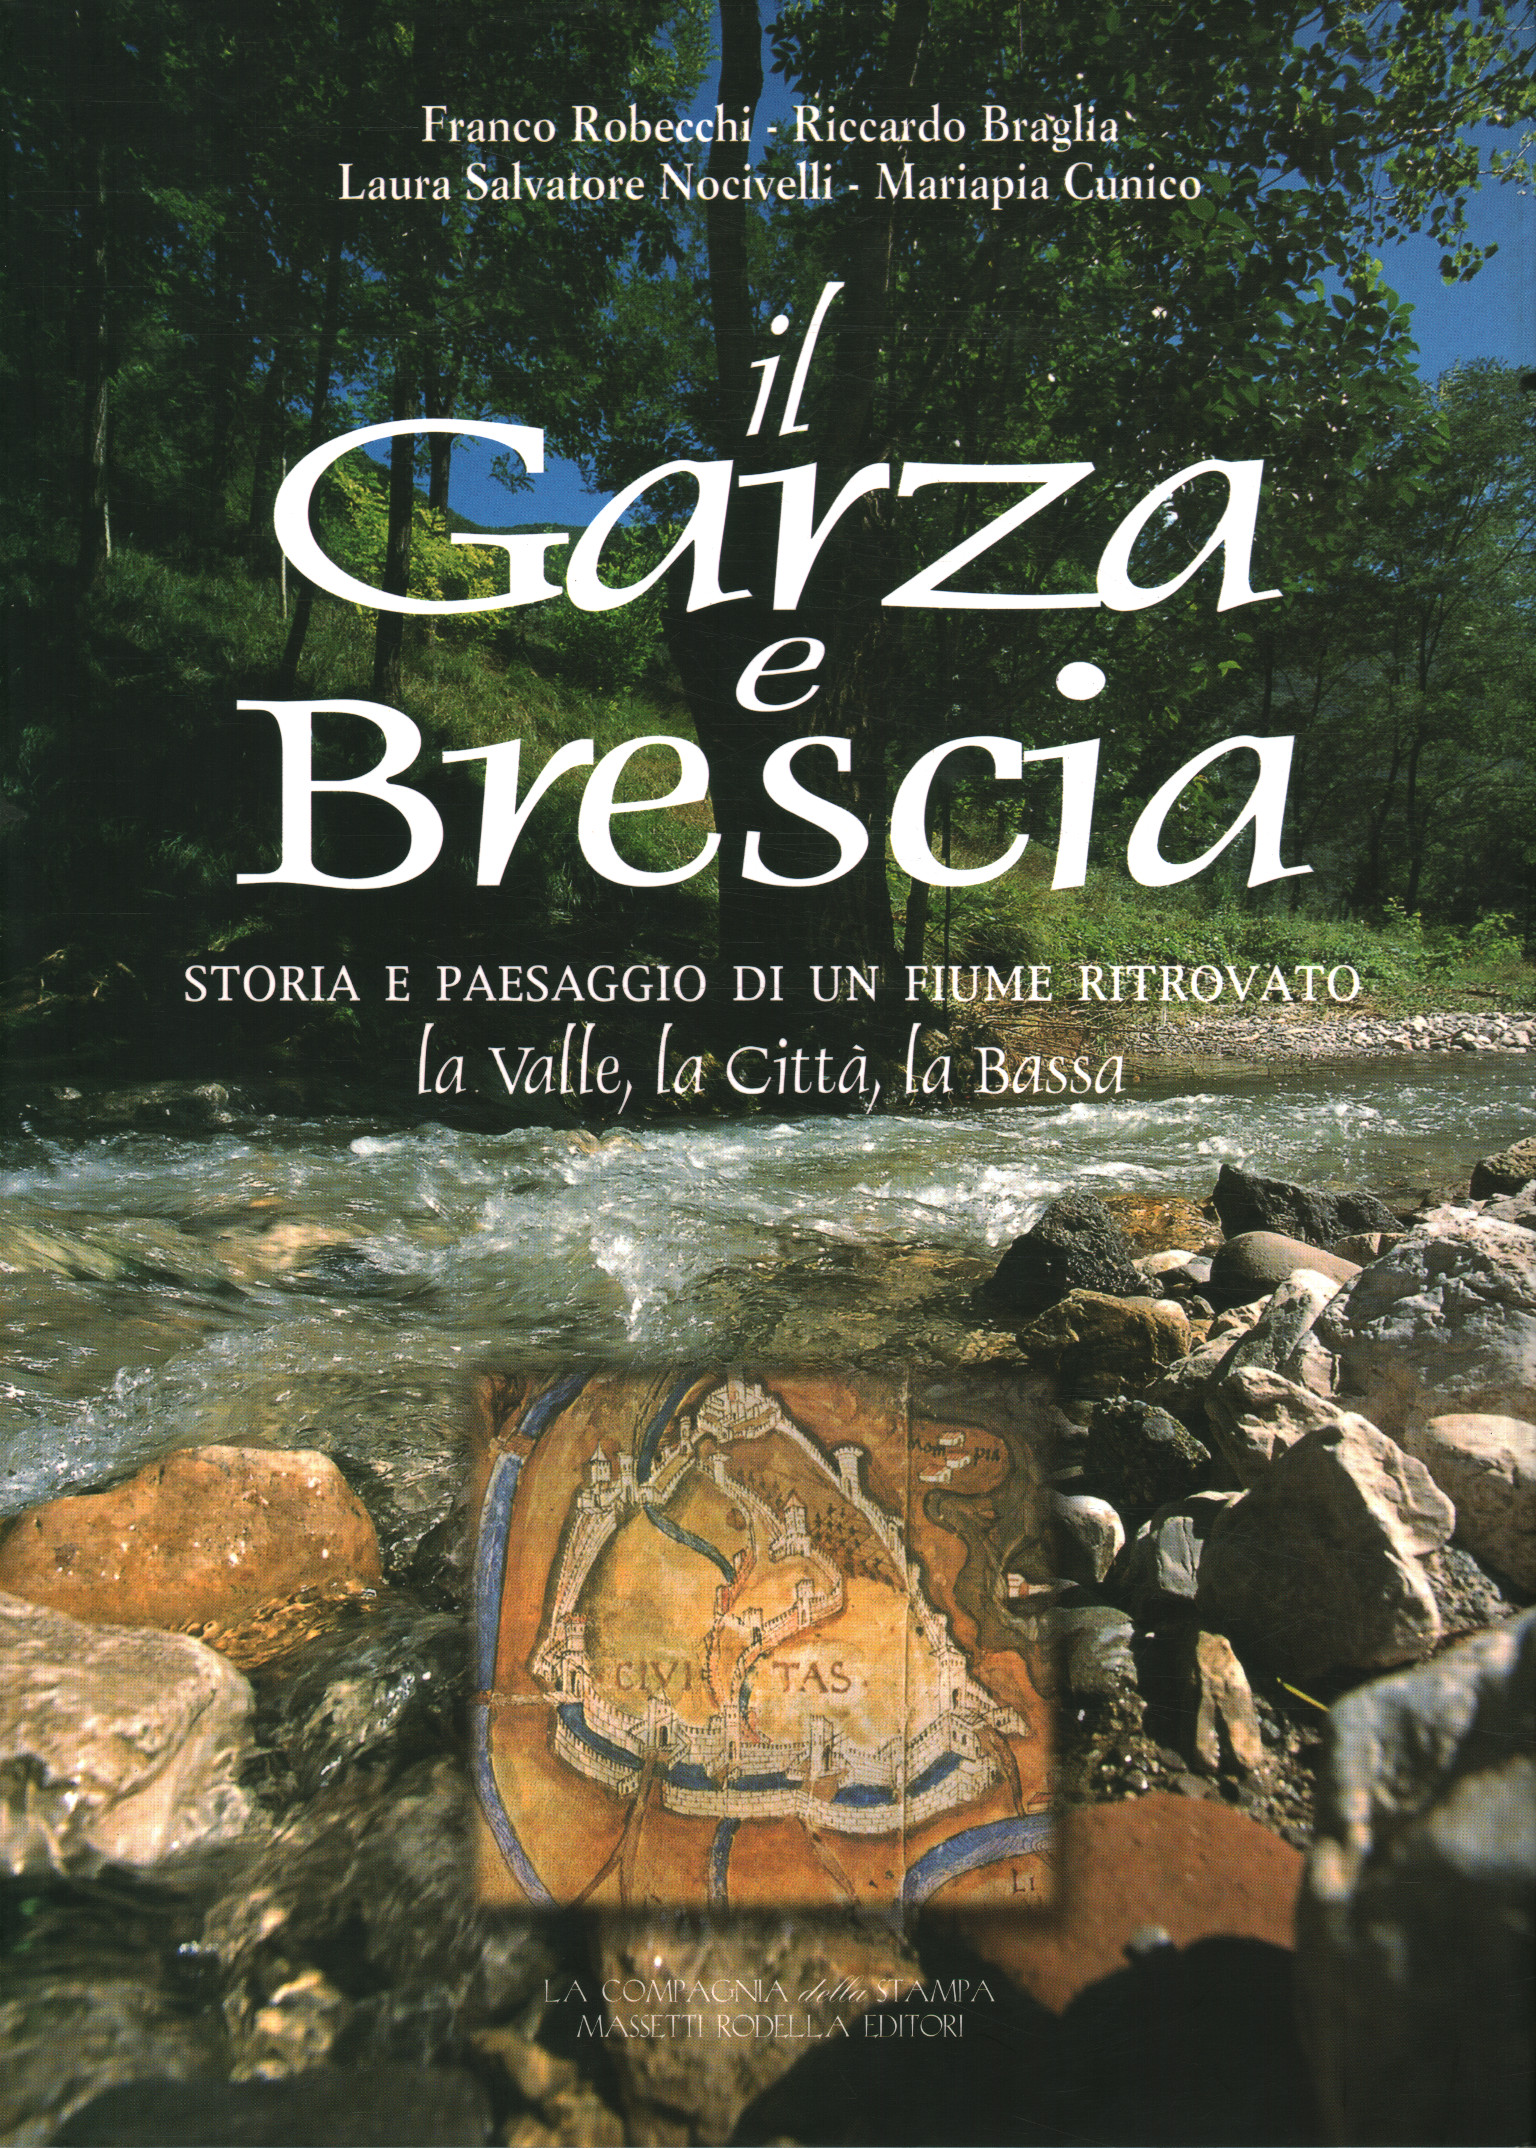 The Garza and Brescia